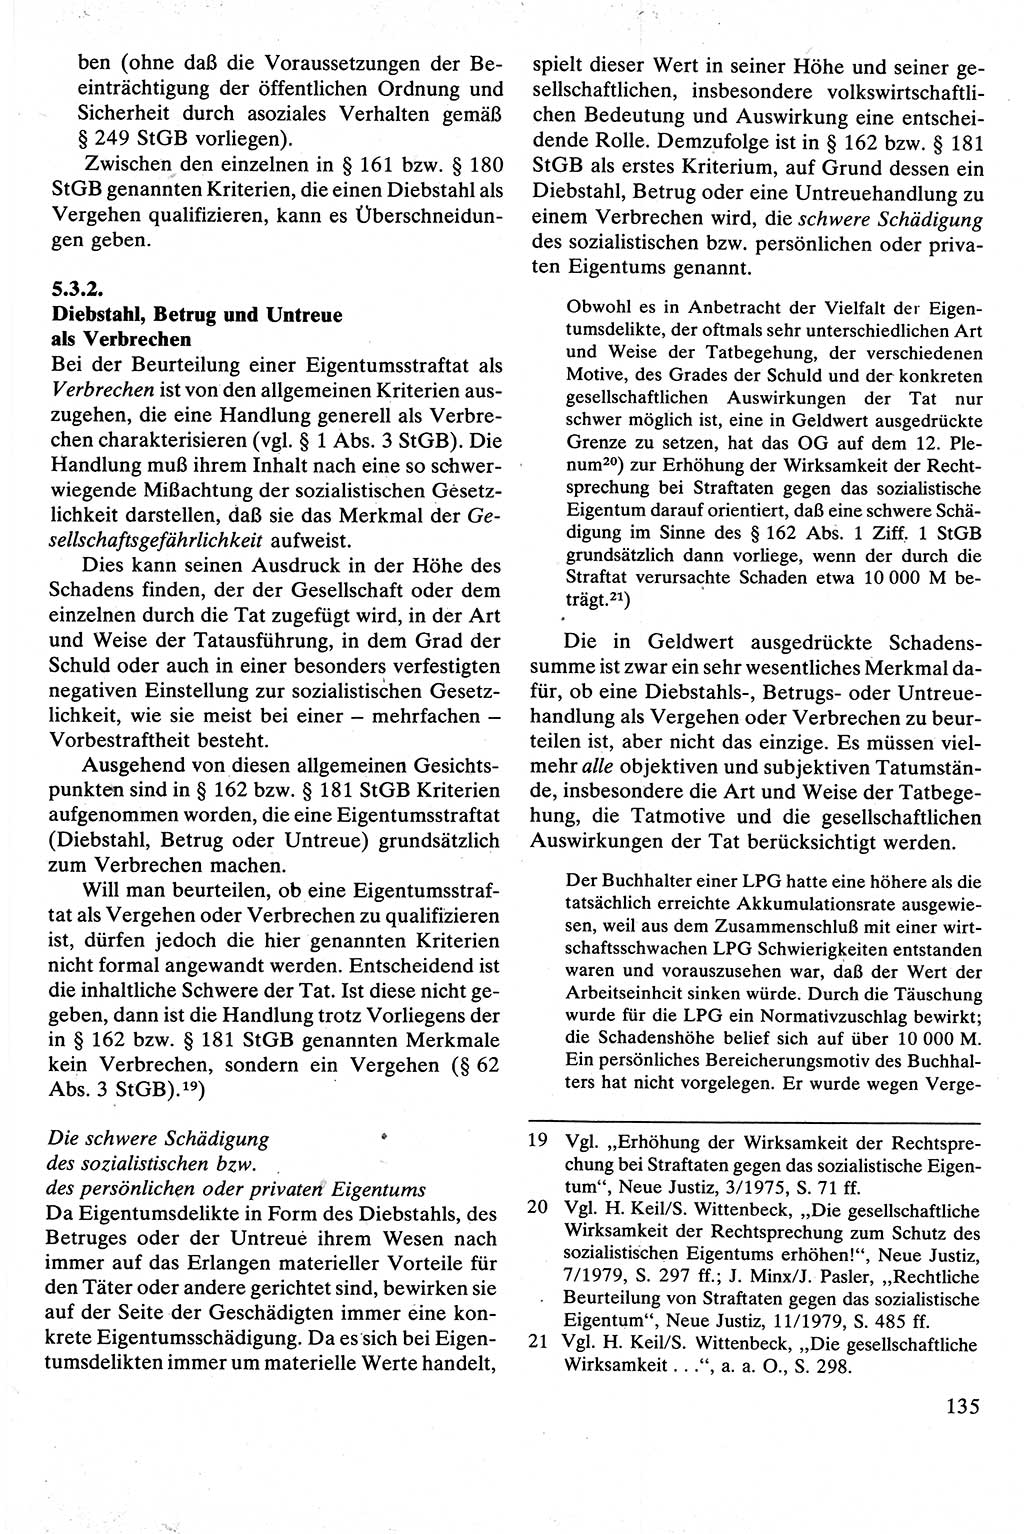 Strafrecht [Deutsche Demokratische Republik (DDR)], Besonderer Teil, Lehrbuch 1981, Seite 135 (Strafr. DDR BT Lb. 1981, S. 135)